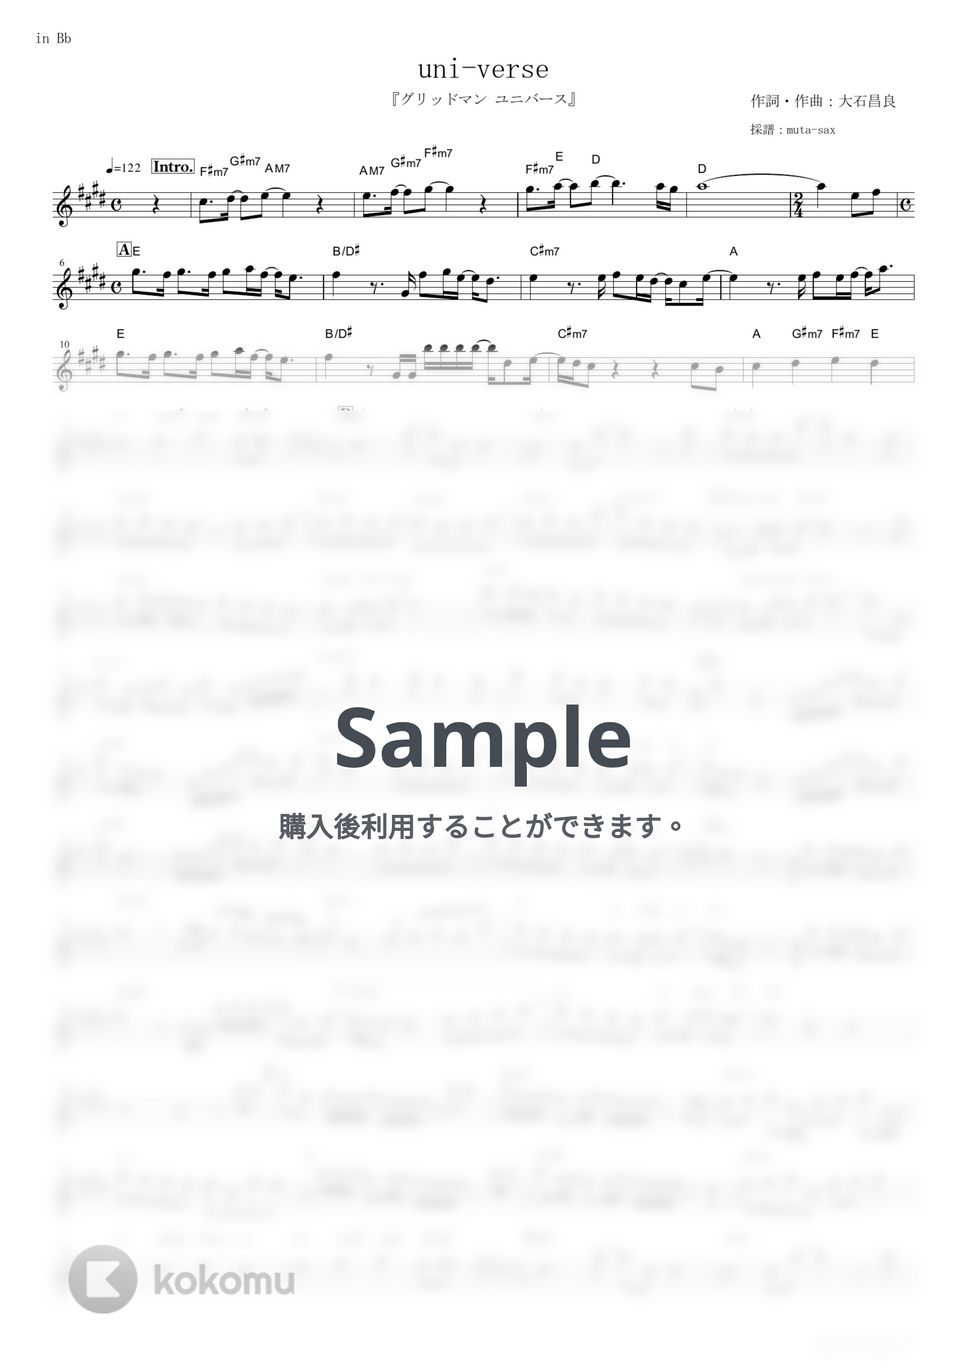 オーイシマサヨシ - uni-verse (『グリッドマン ユニバース』 / in Bb) by muta-sax